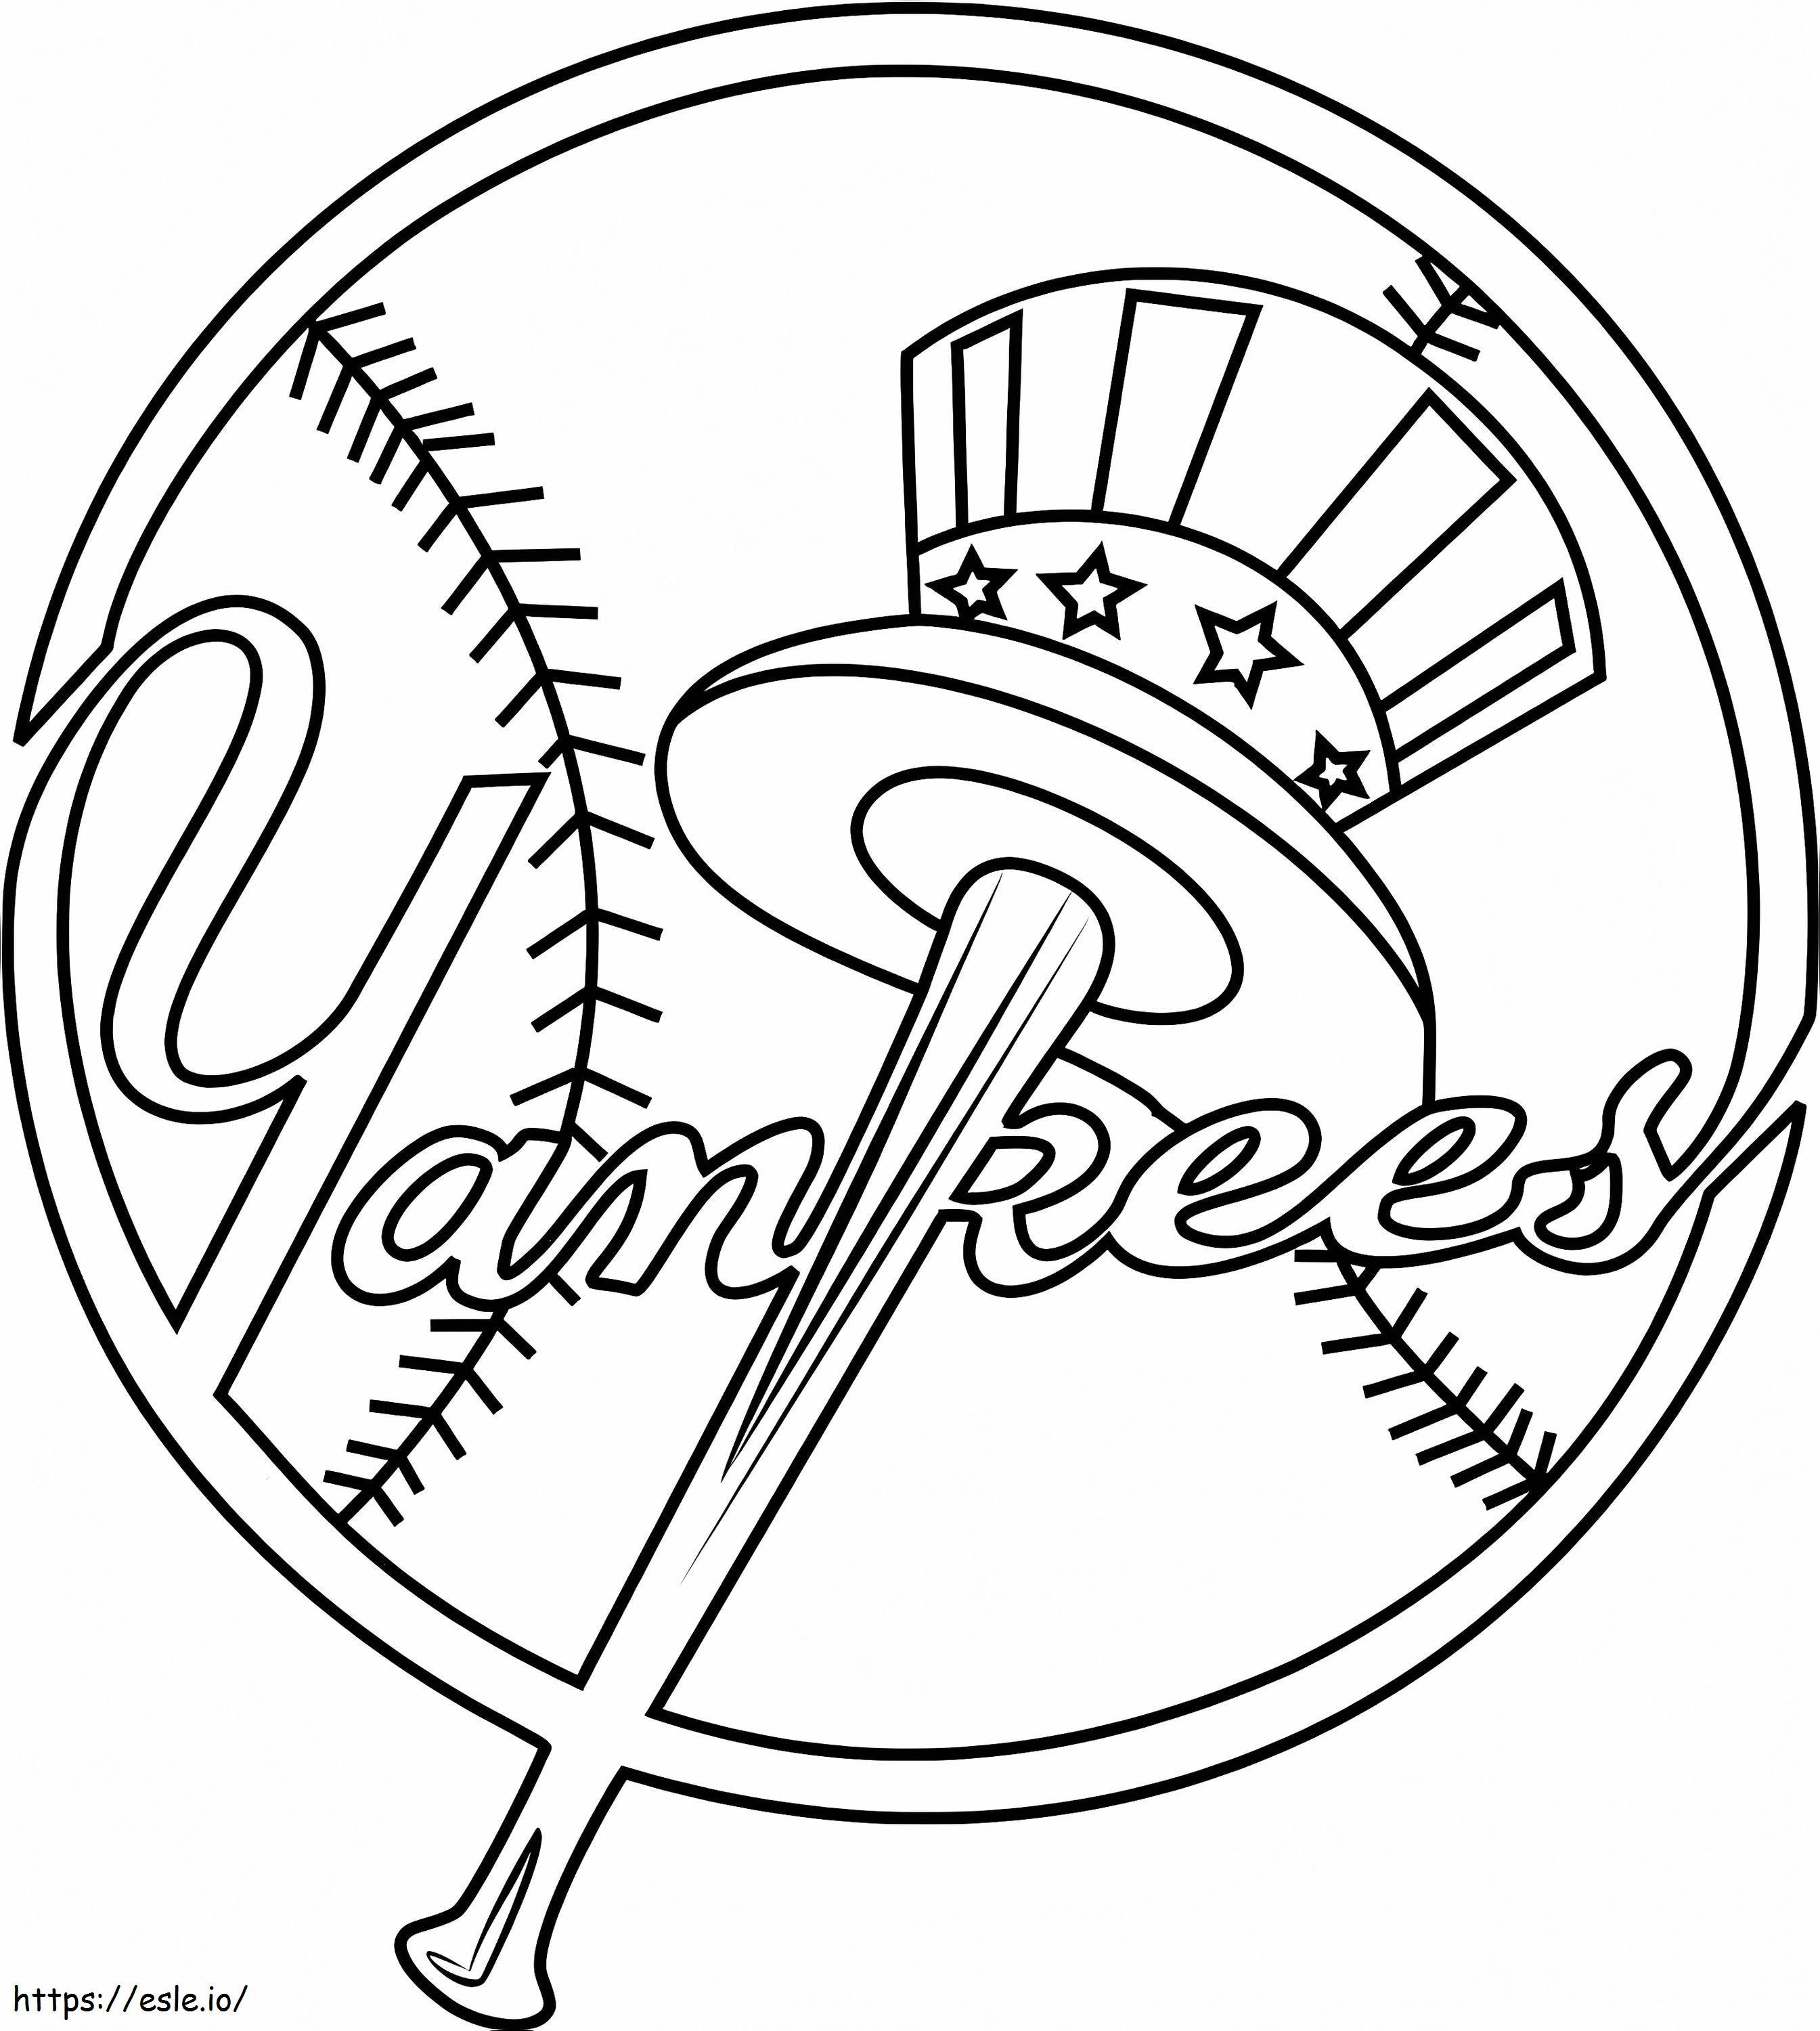 Logotipo de los Yankees de Nueva York para colorear